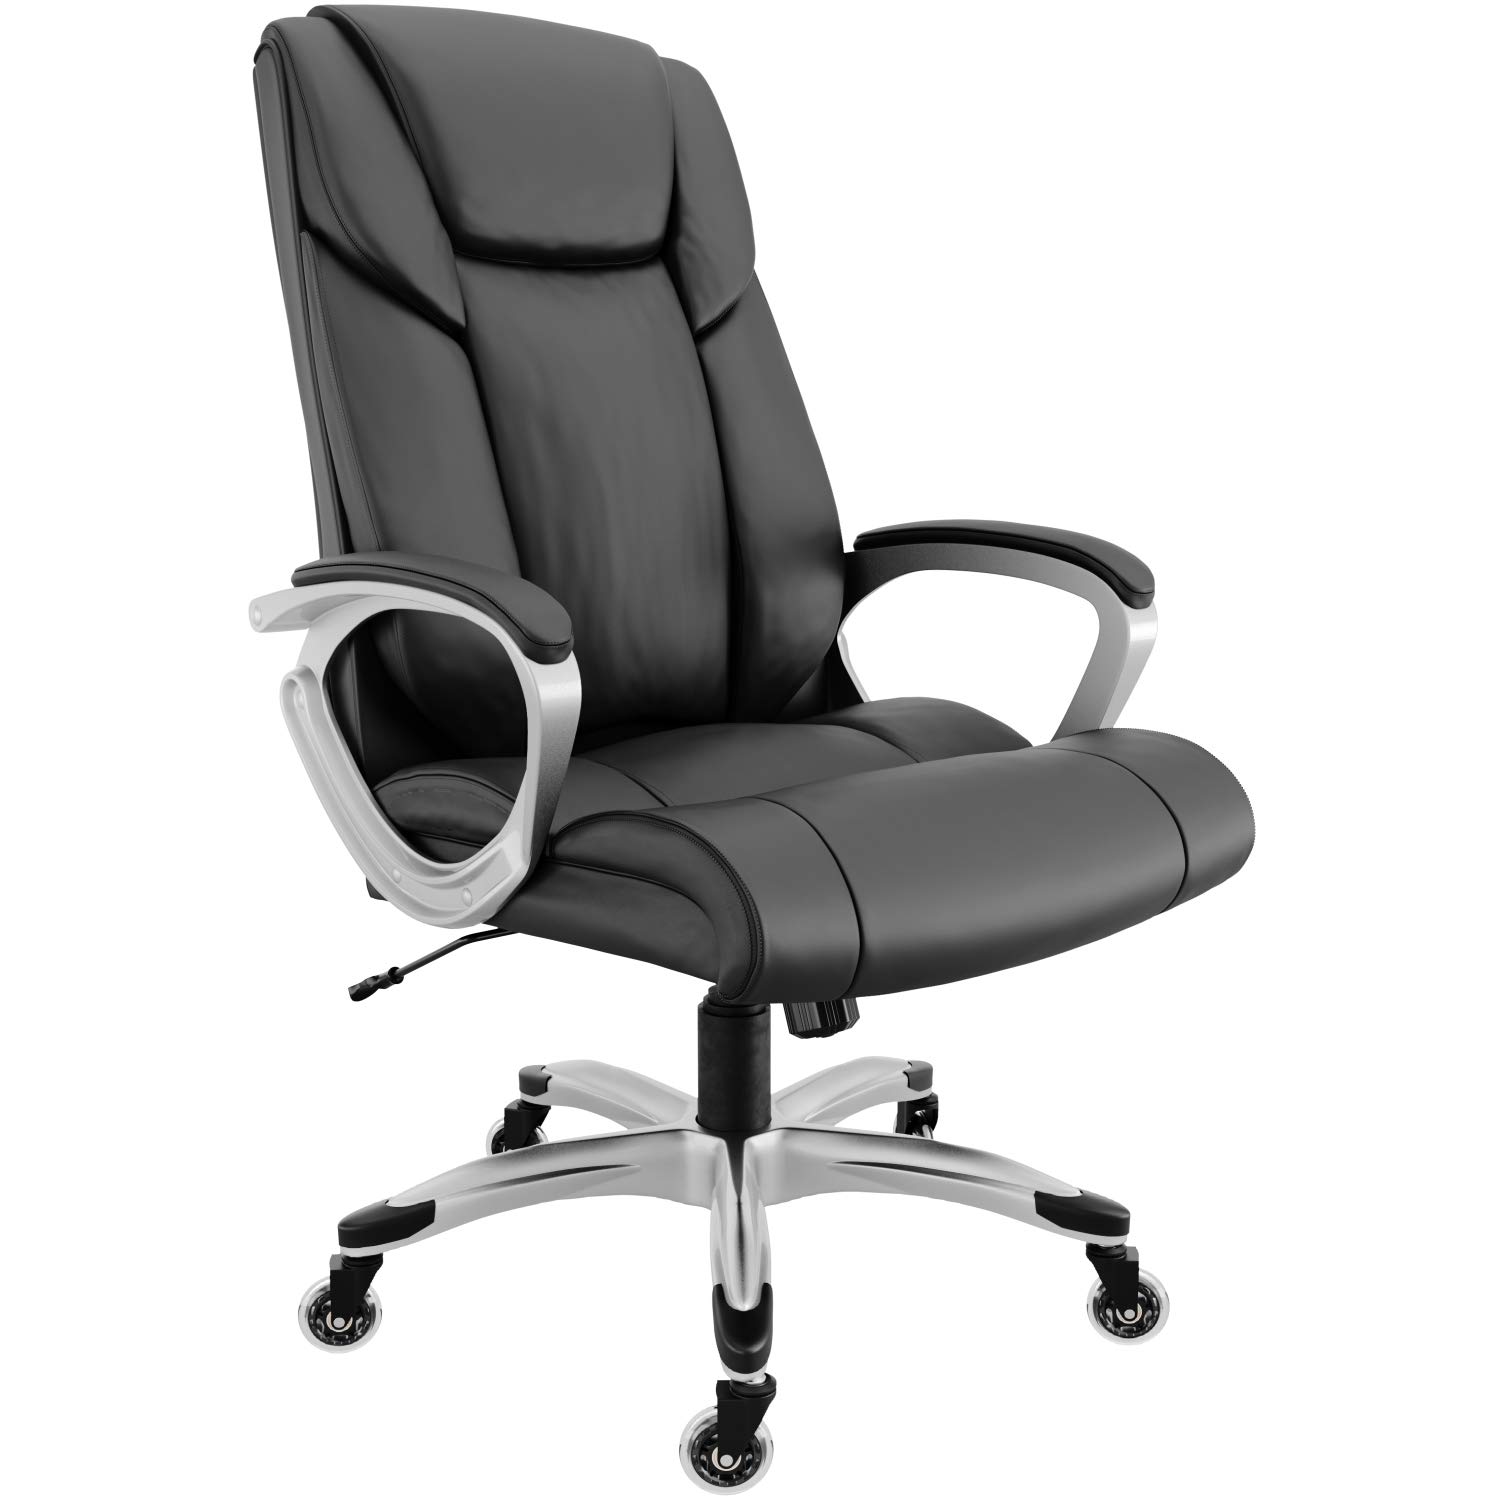 RIF6 带高级直排滑轮脚轮的大班椅 带高级气举装置的重型办公椅 舒适的高靠背粘合皮革游戏椅，带倾斜和座椅高度调节功能